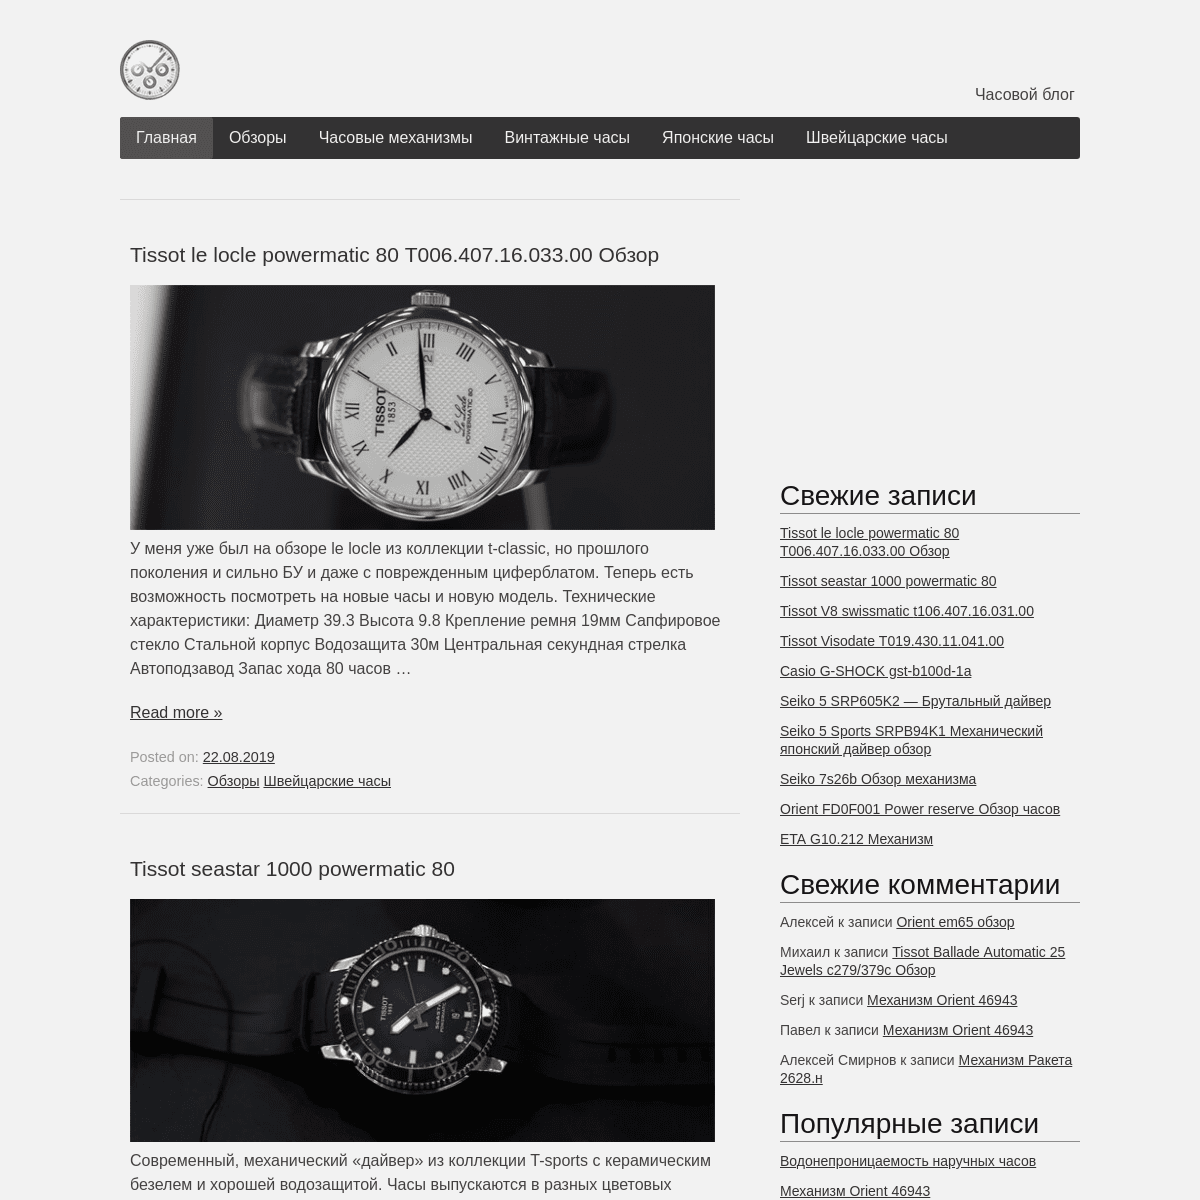 Часовой блог - Хронометрика | Часовой блог